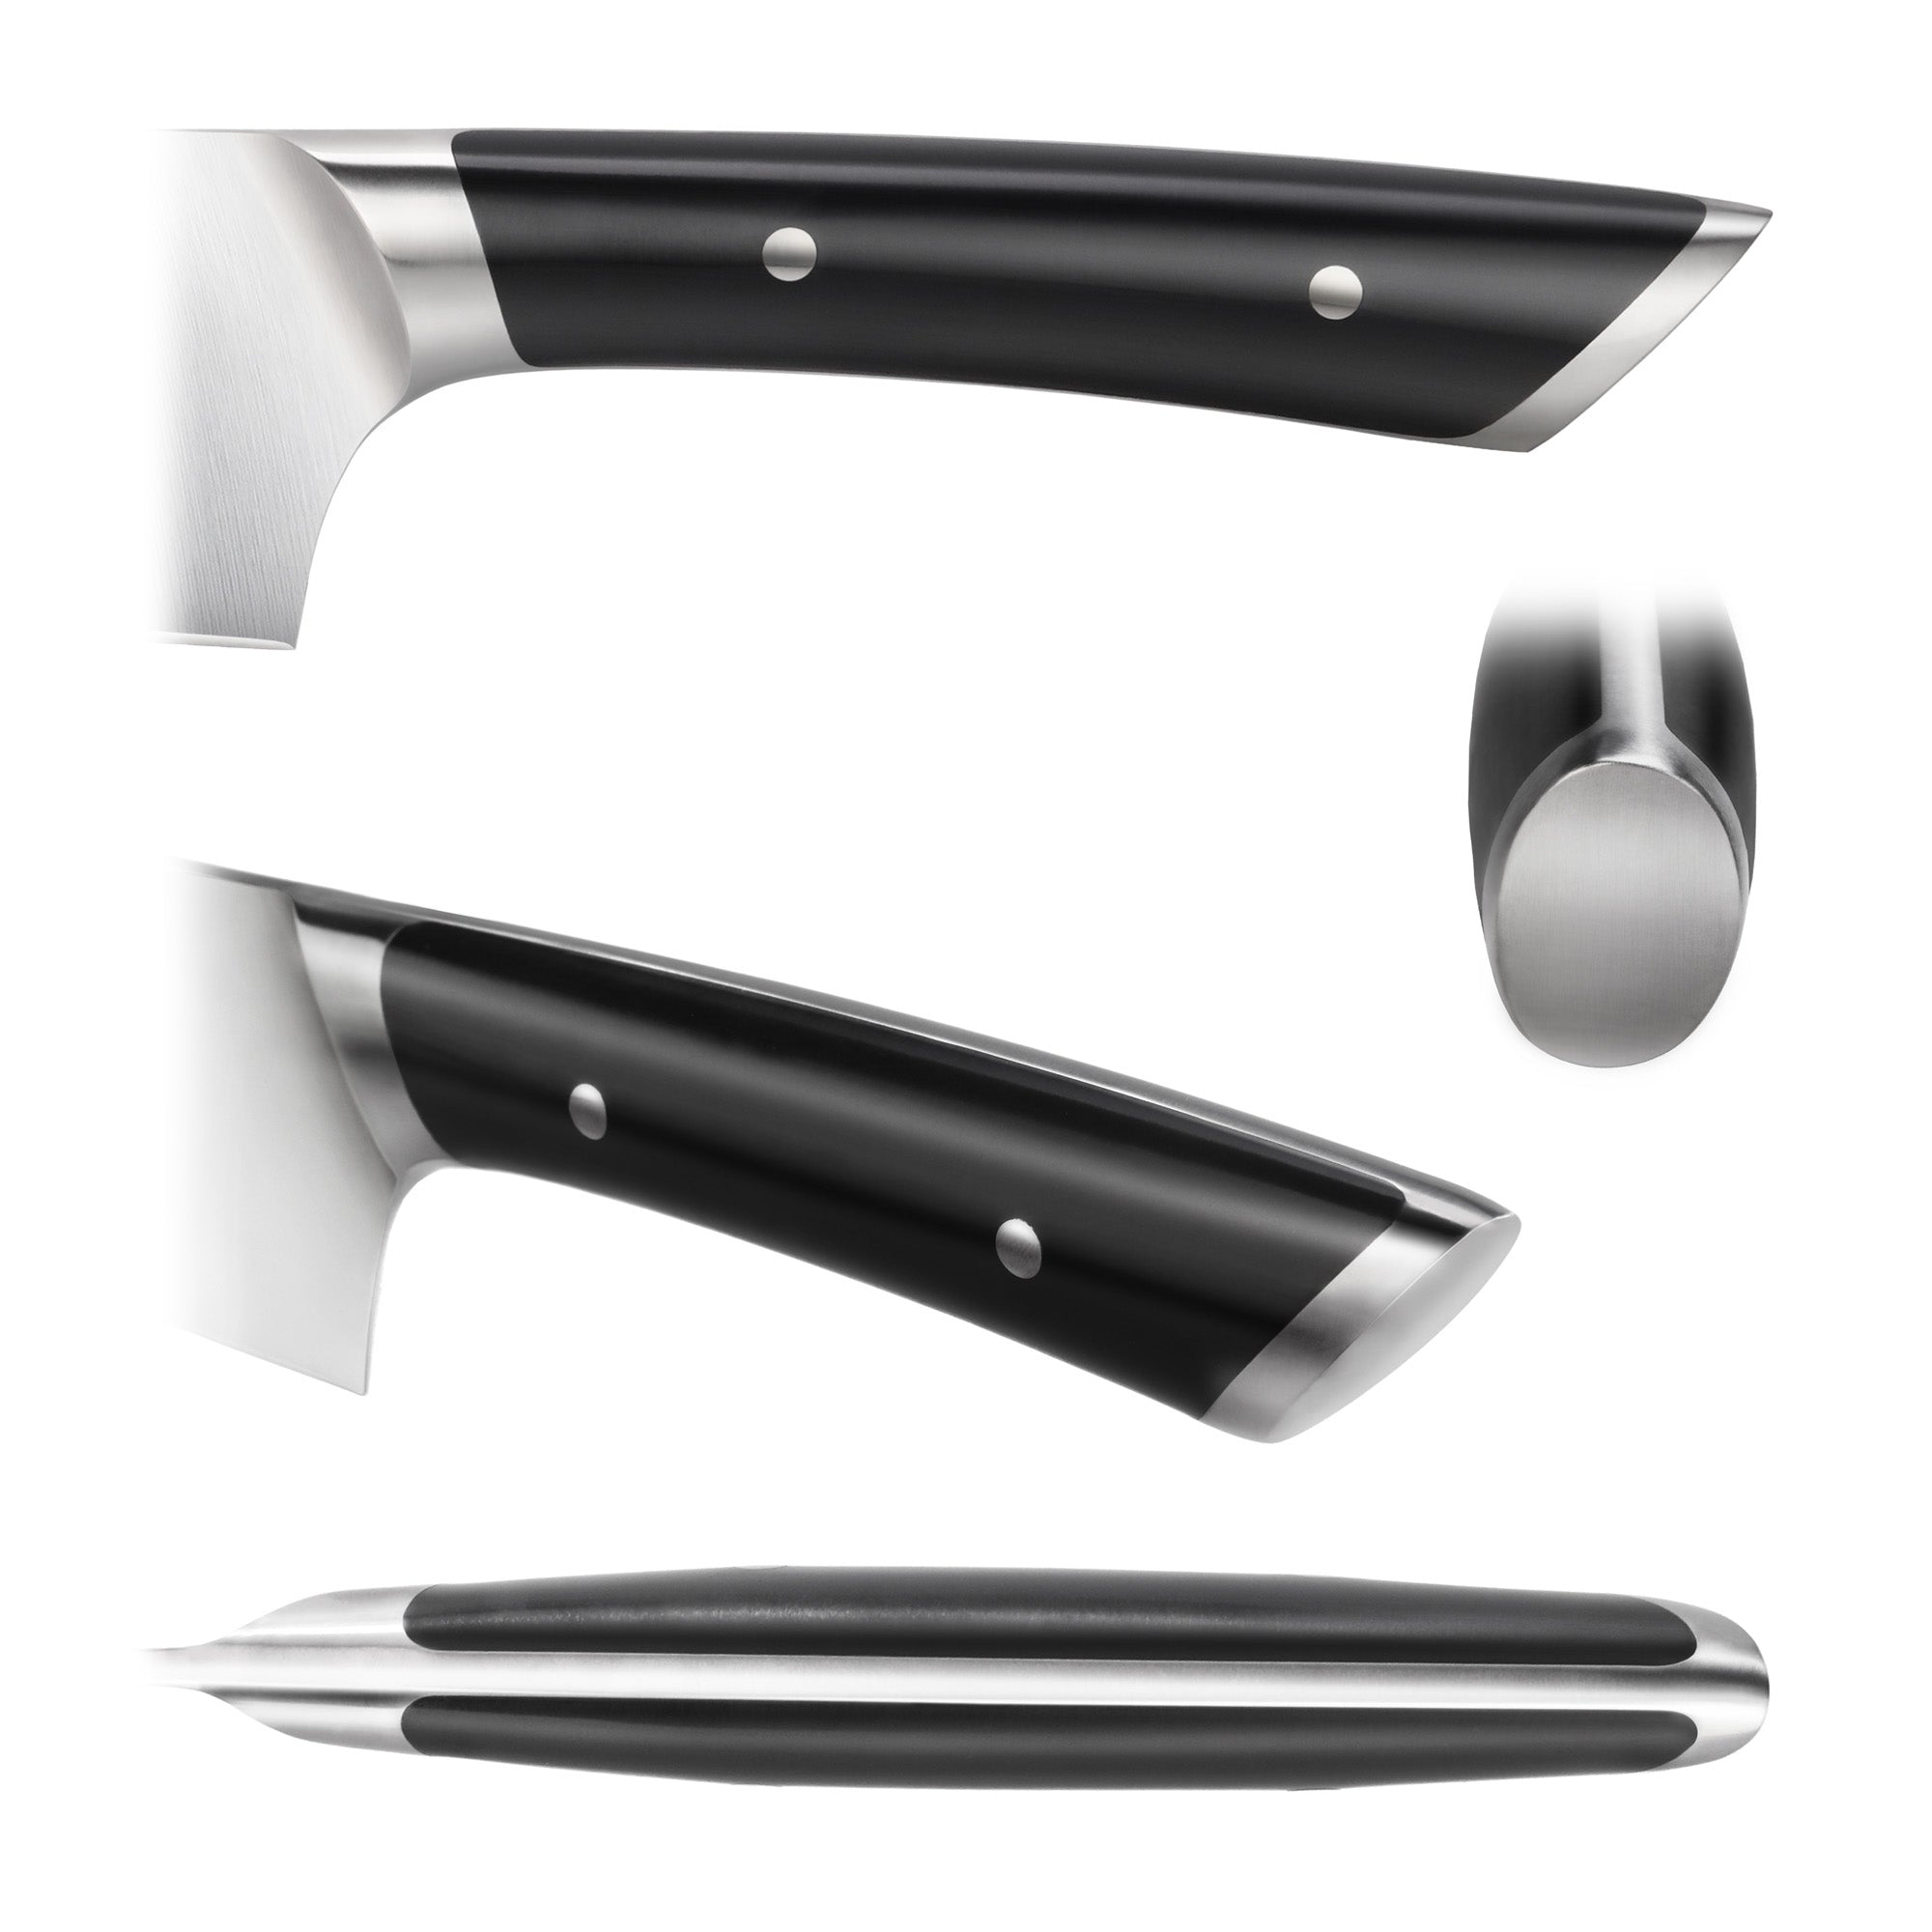 Cangshan HELENA Series German Steel 12-piece Knife Block Set, Black